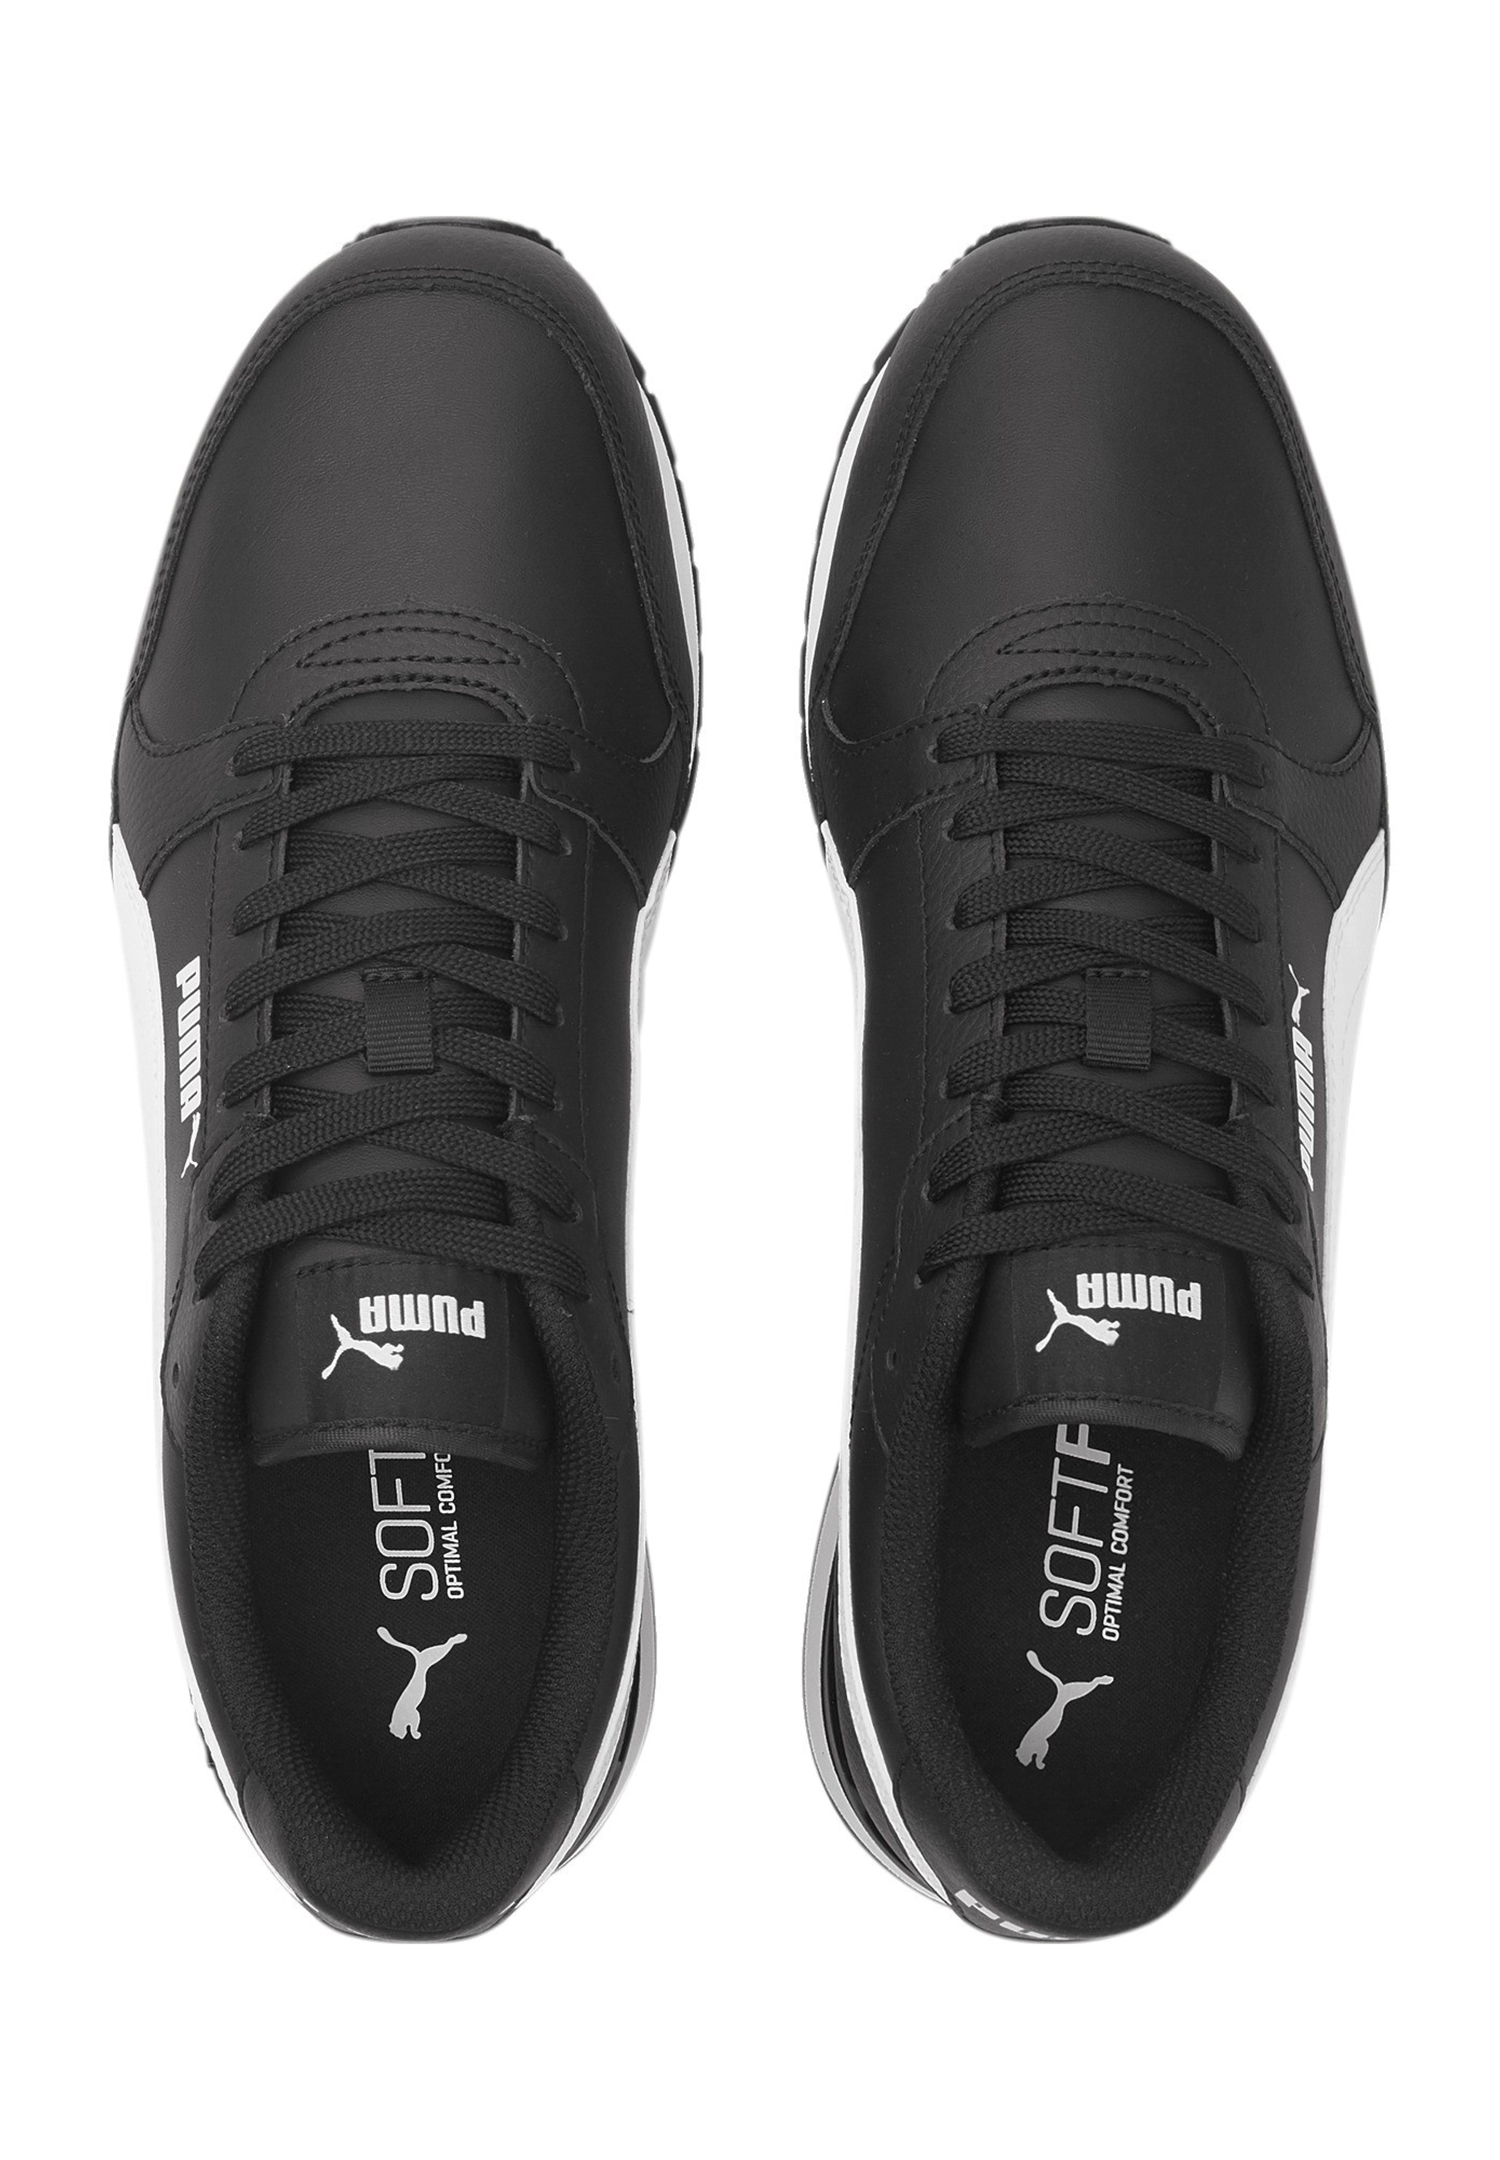 Puma ST Runner v3 Full L Unisex Sneaker Turnschuhe 384855 06 schwarz/weiss